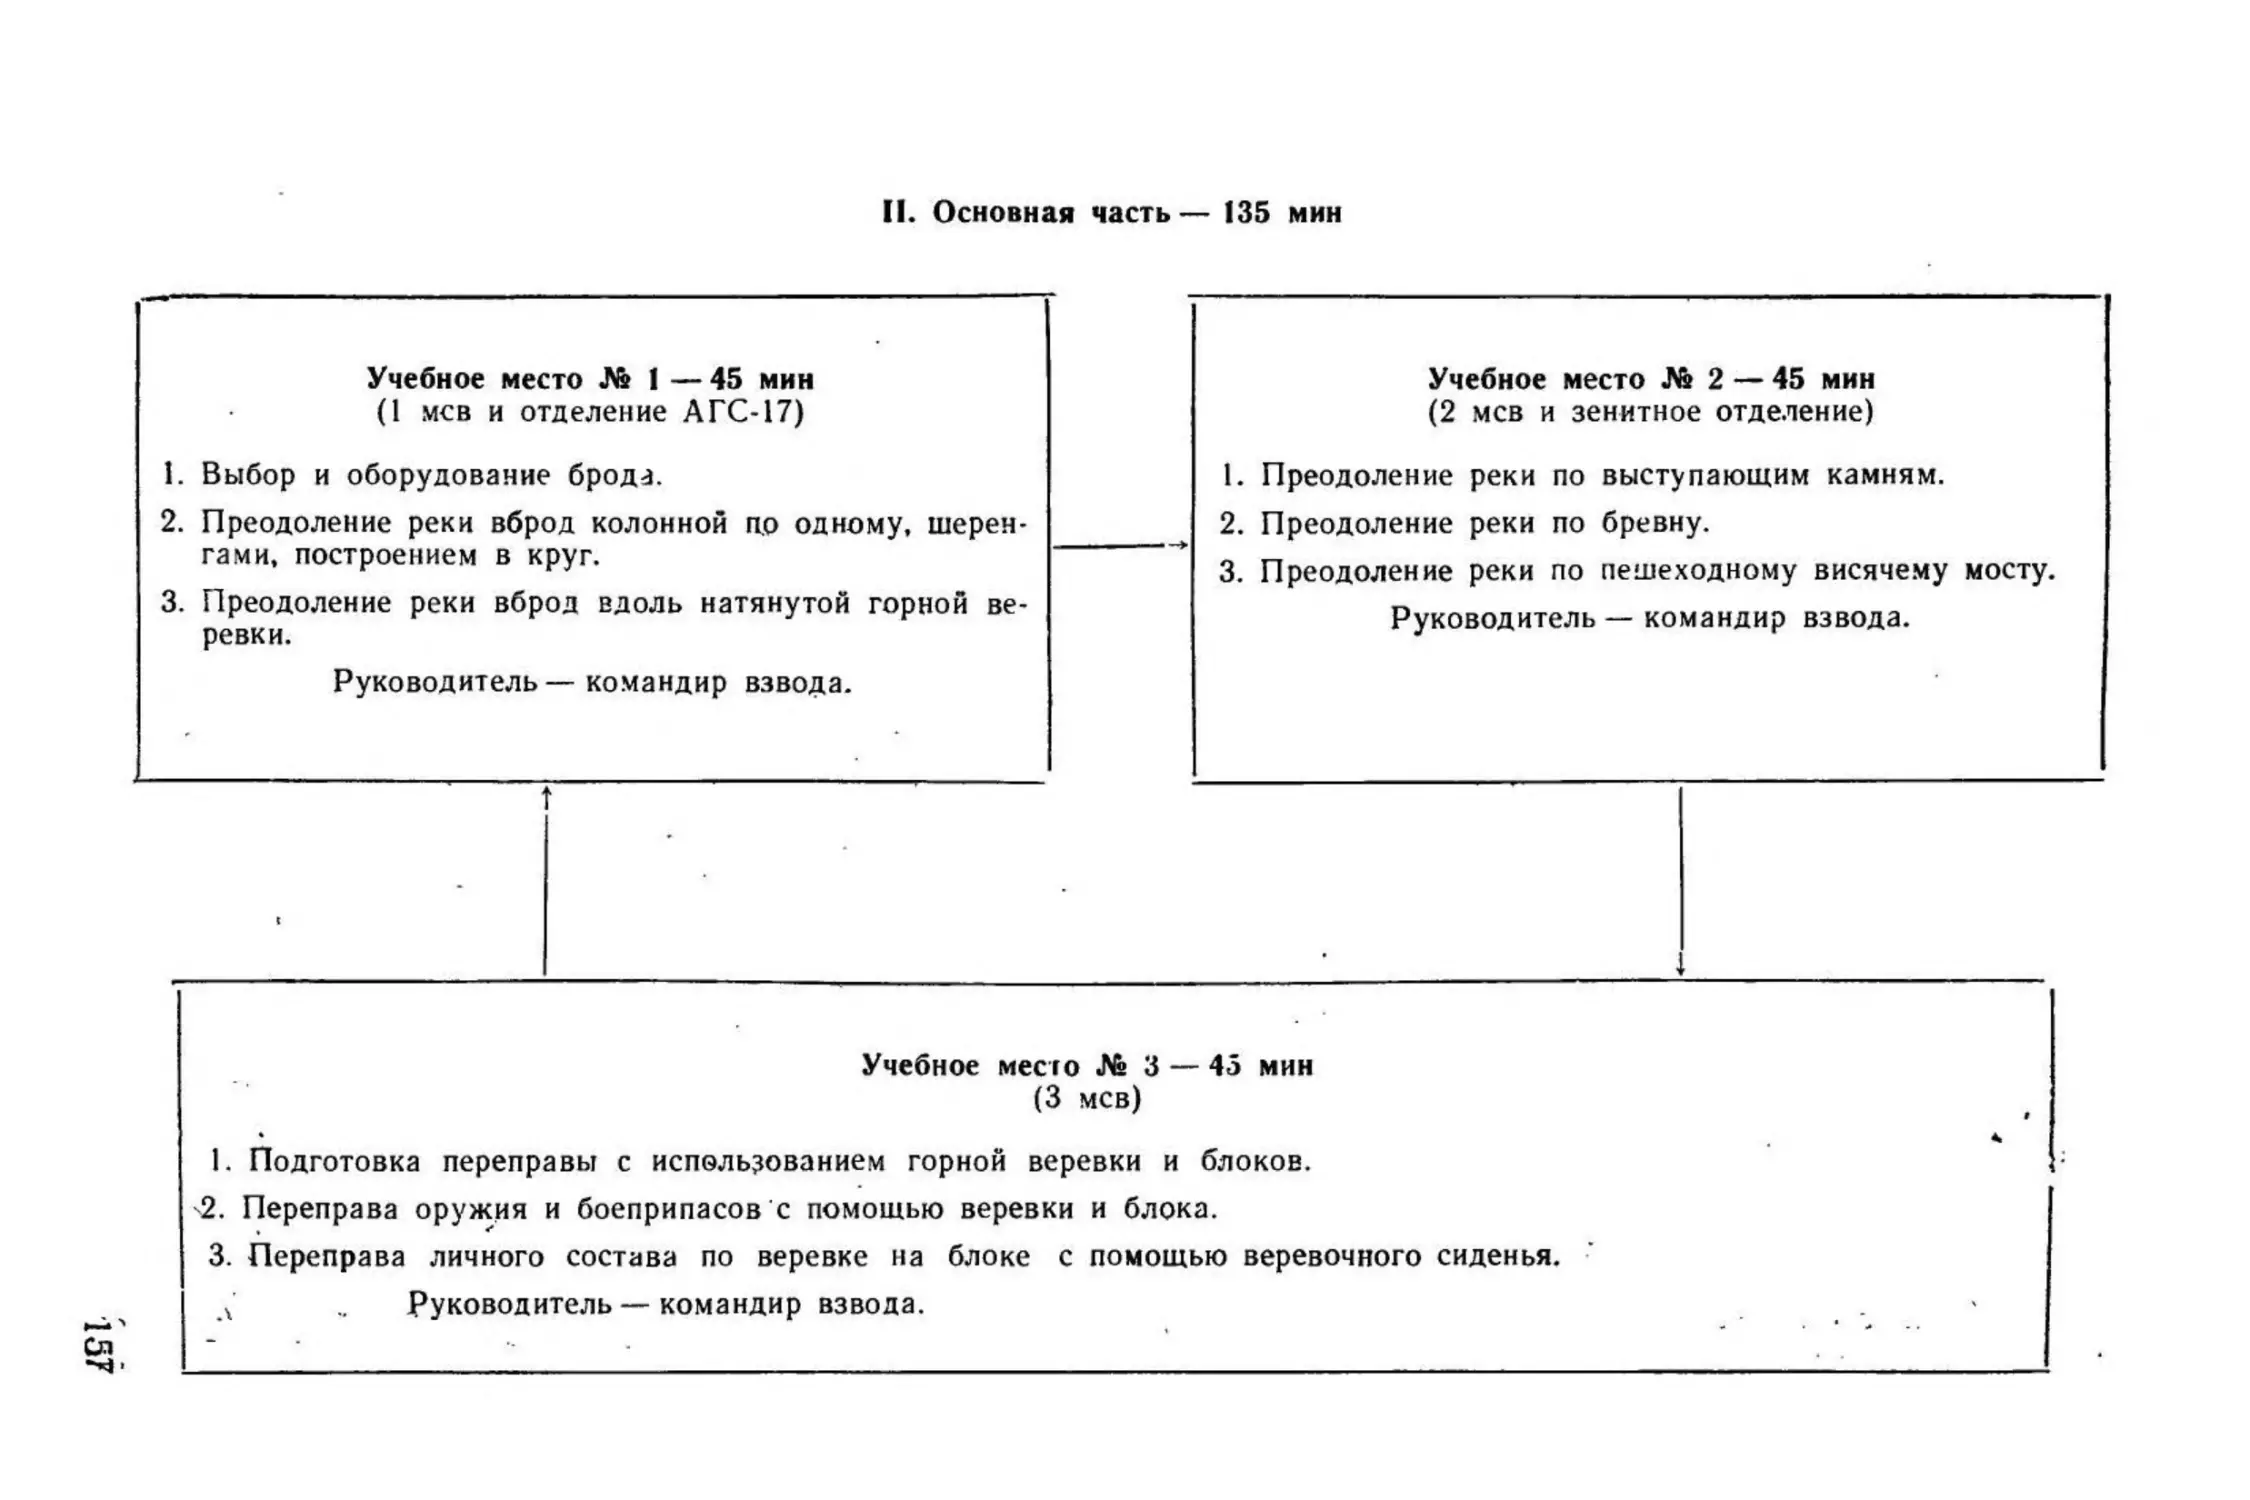 Методическое пособие Обучение мотострелковых подразделений боевым действиям в горах (1979)_158